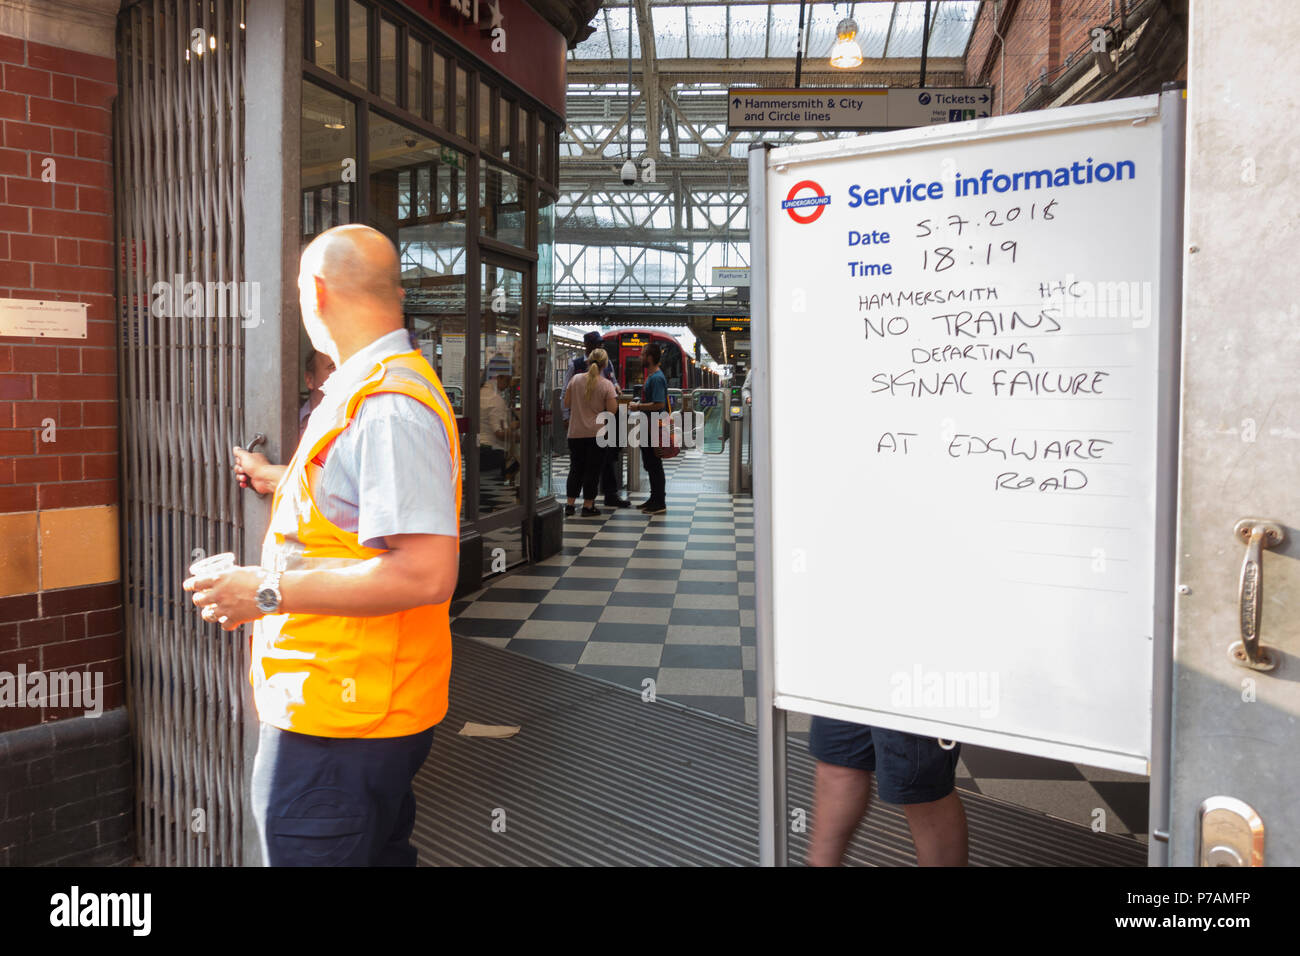 La Hammersmith e la City Line sono state sospese questa sera a causa di un errore di segnale che ha causato il caos di viaggio a Londra Foto Stock